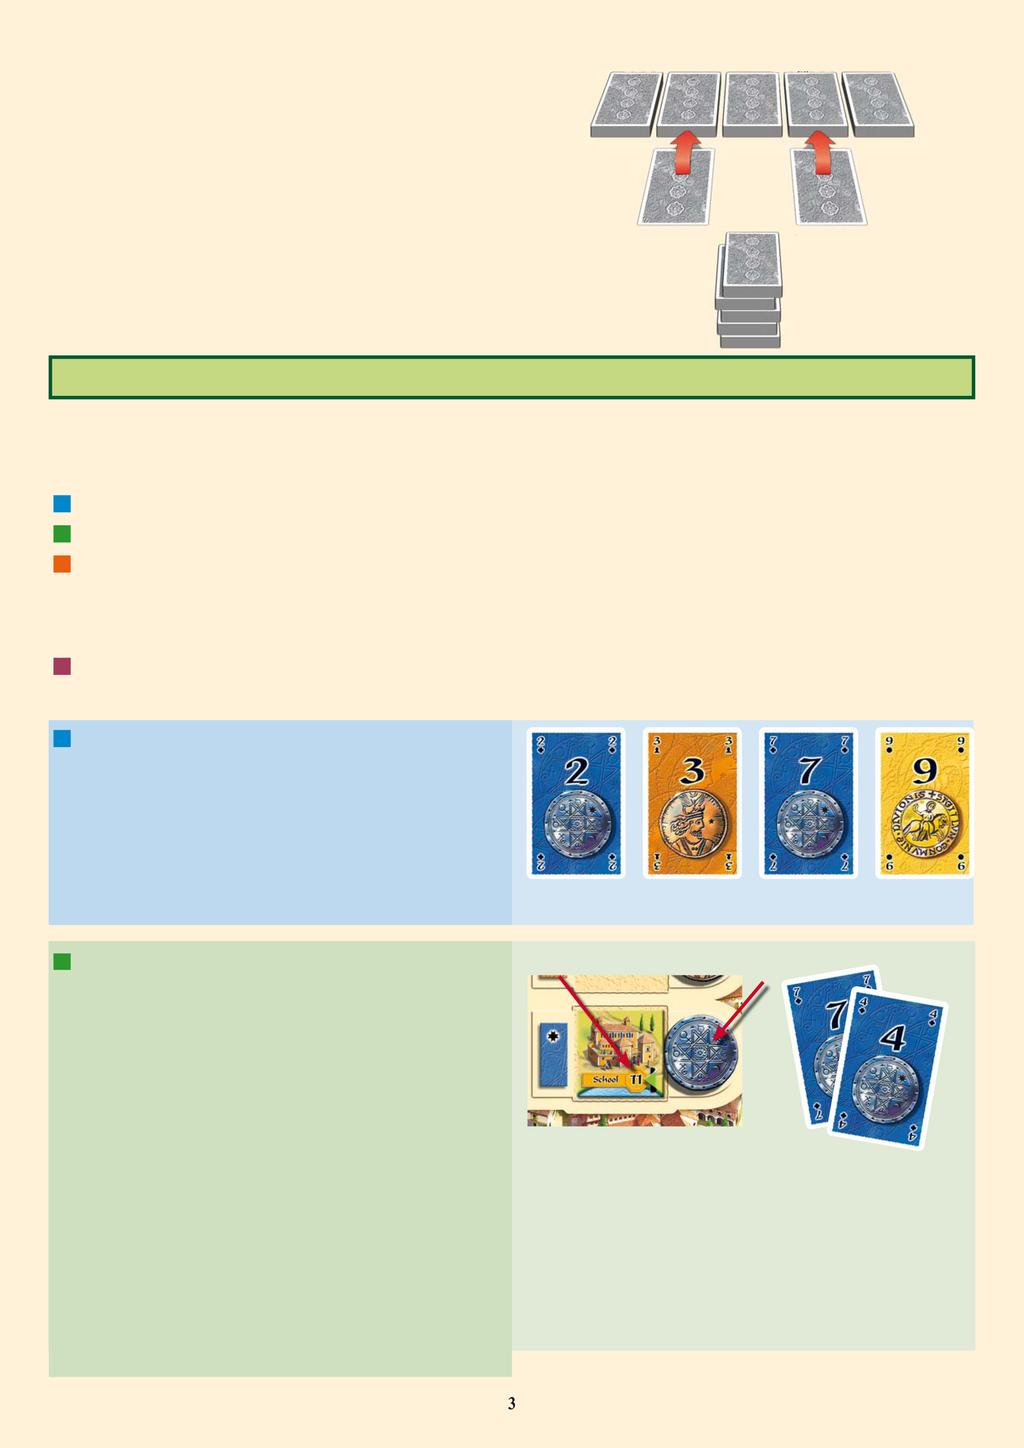 Οι υπόλοιπες κάρτες χρημάτων χωρίζονται σε πέντε περίπου ίσες στοίβες. Τοποθετείστε την 1η Κάρτα Γύρου Σκοραρίσματος στη δεύτερη στοίβα και την 2η Κάρτα Γύρου Σκοραρίσματος στην τέταρτη στοίβα.